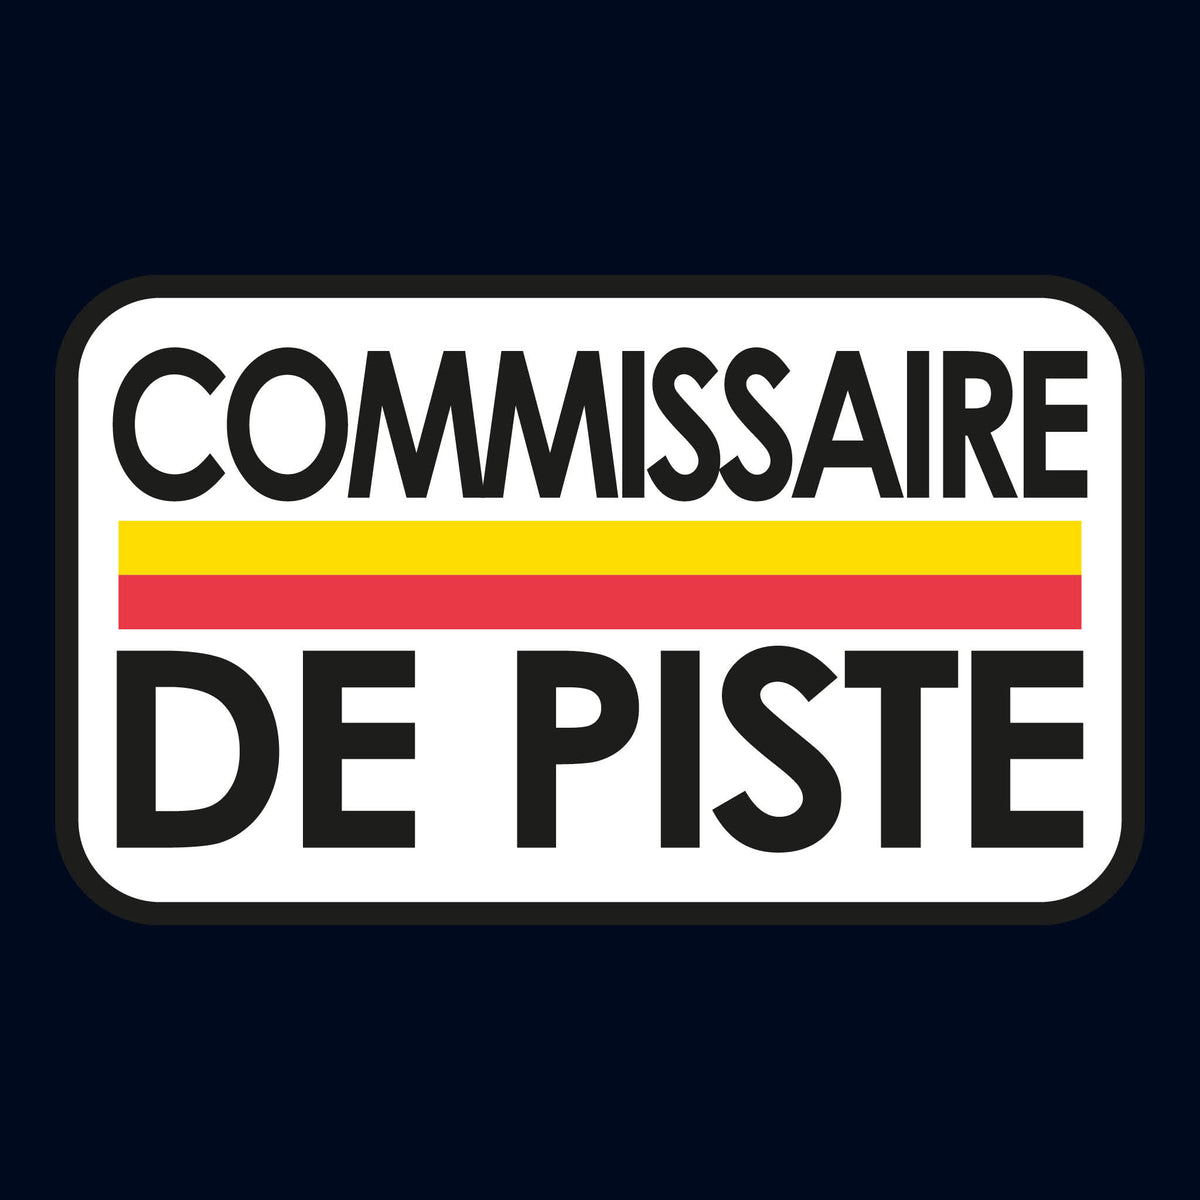 Vintage Commissaire de Piste Le Mans Marshal Sticker